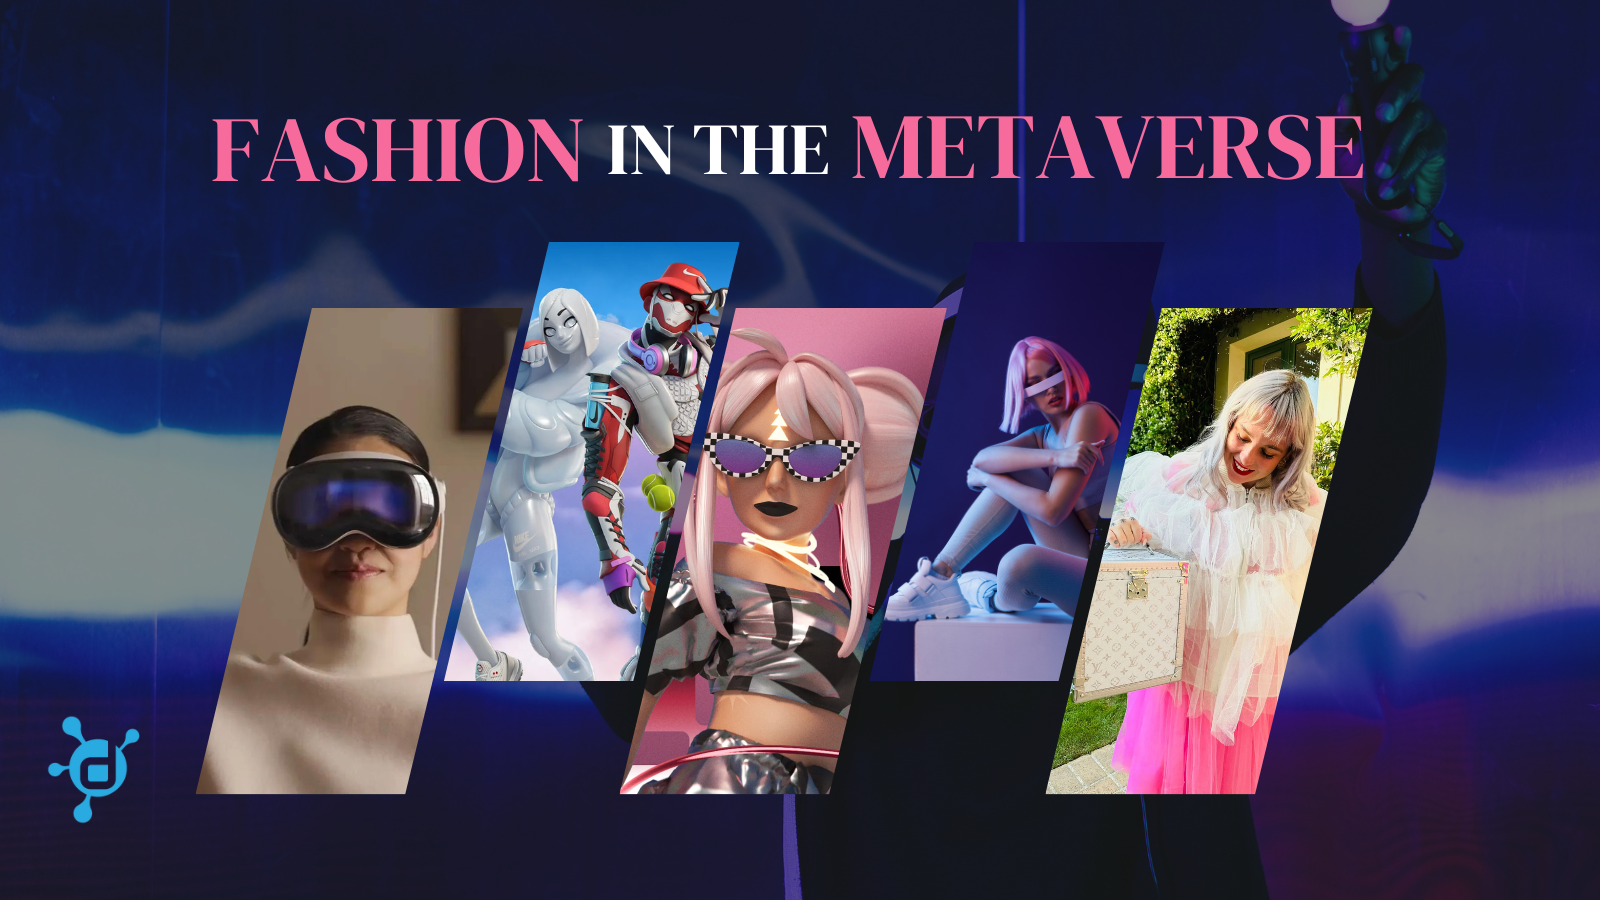 Web3 merch: Fashion or fandom?